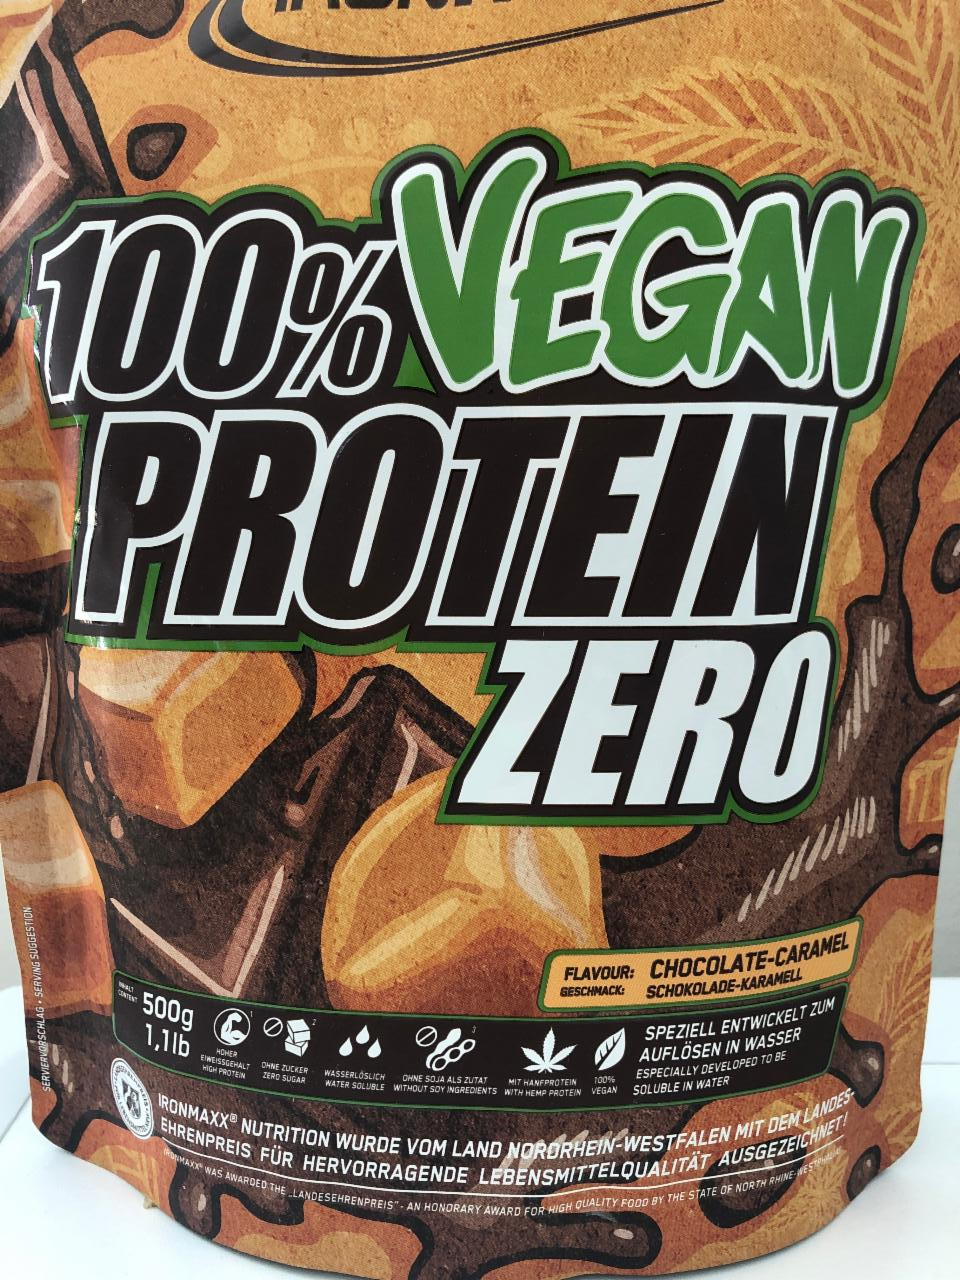 Fotografie - 100% Vegan Protein Zero Chocolate-Caramel IronMaxx